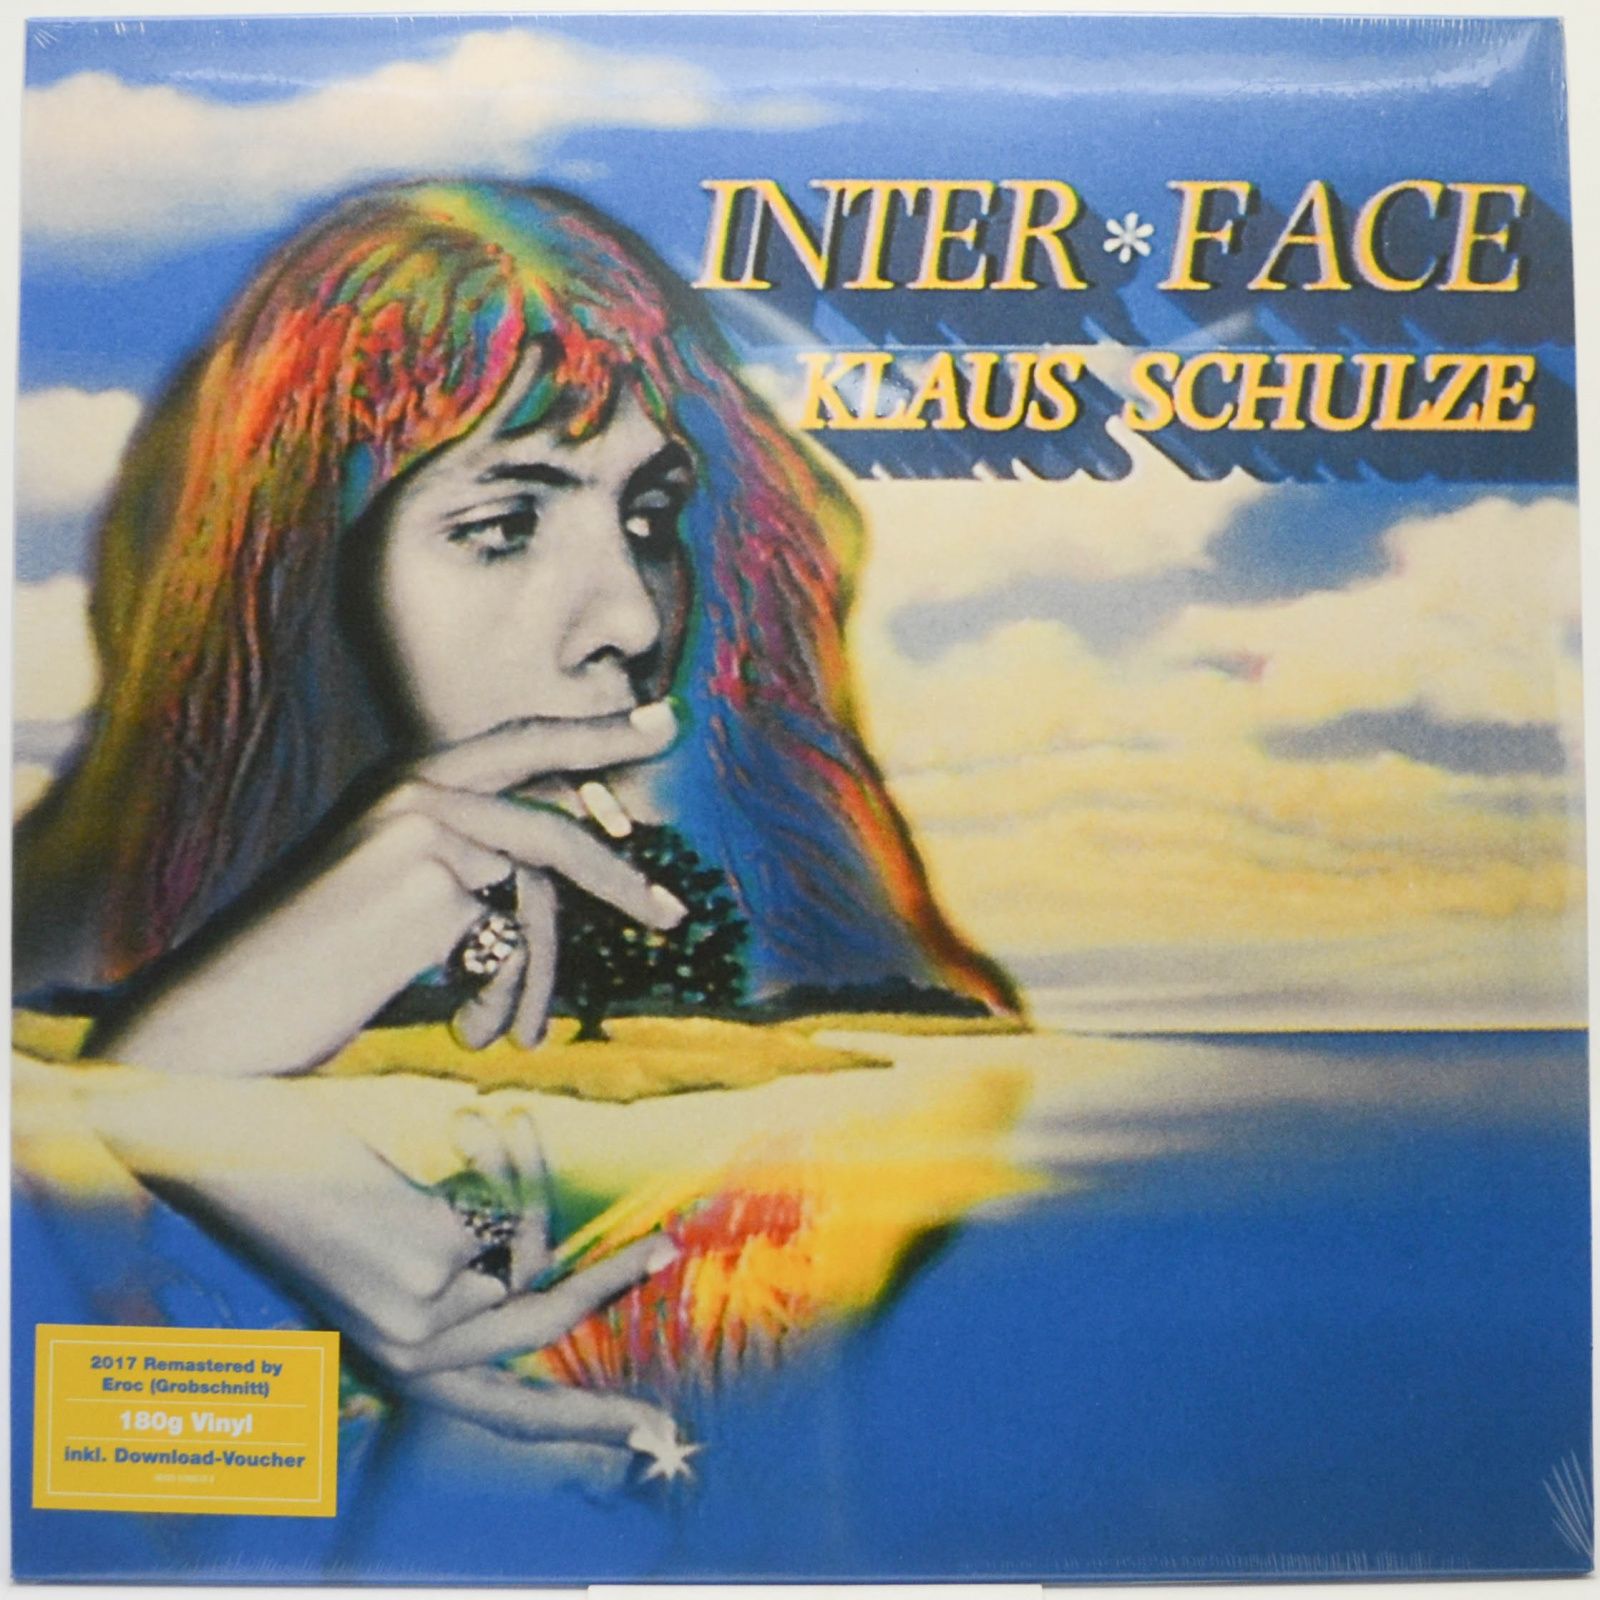 Klaus Schulze — Inter * Face, 1985